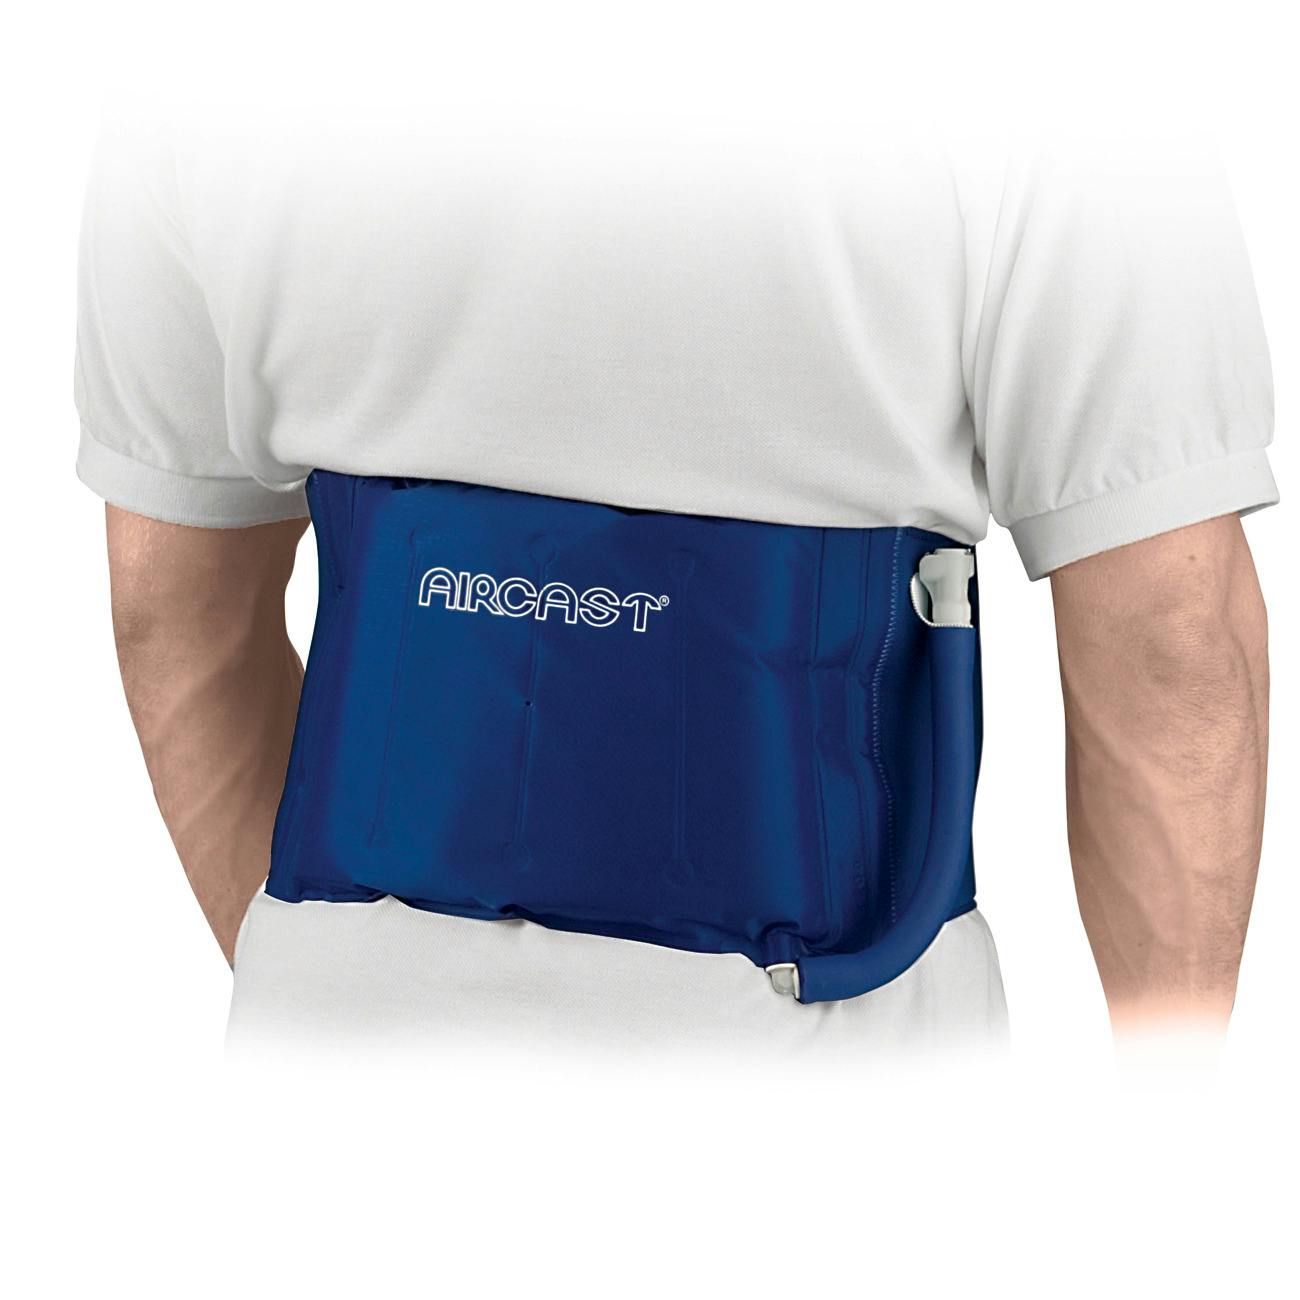 Produktbild AIRCAST® Cryo/Cuff™-Rückenbandage, Kältetherapie-System zur effektiven Reduzierung von Schwellungen und Schmerzen